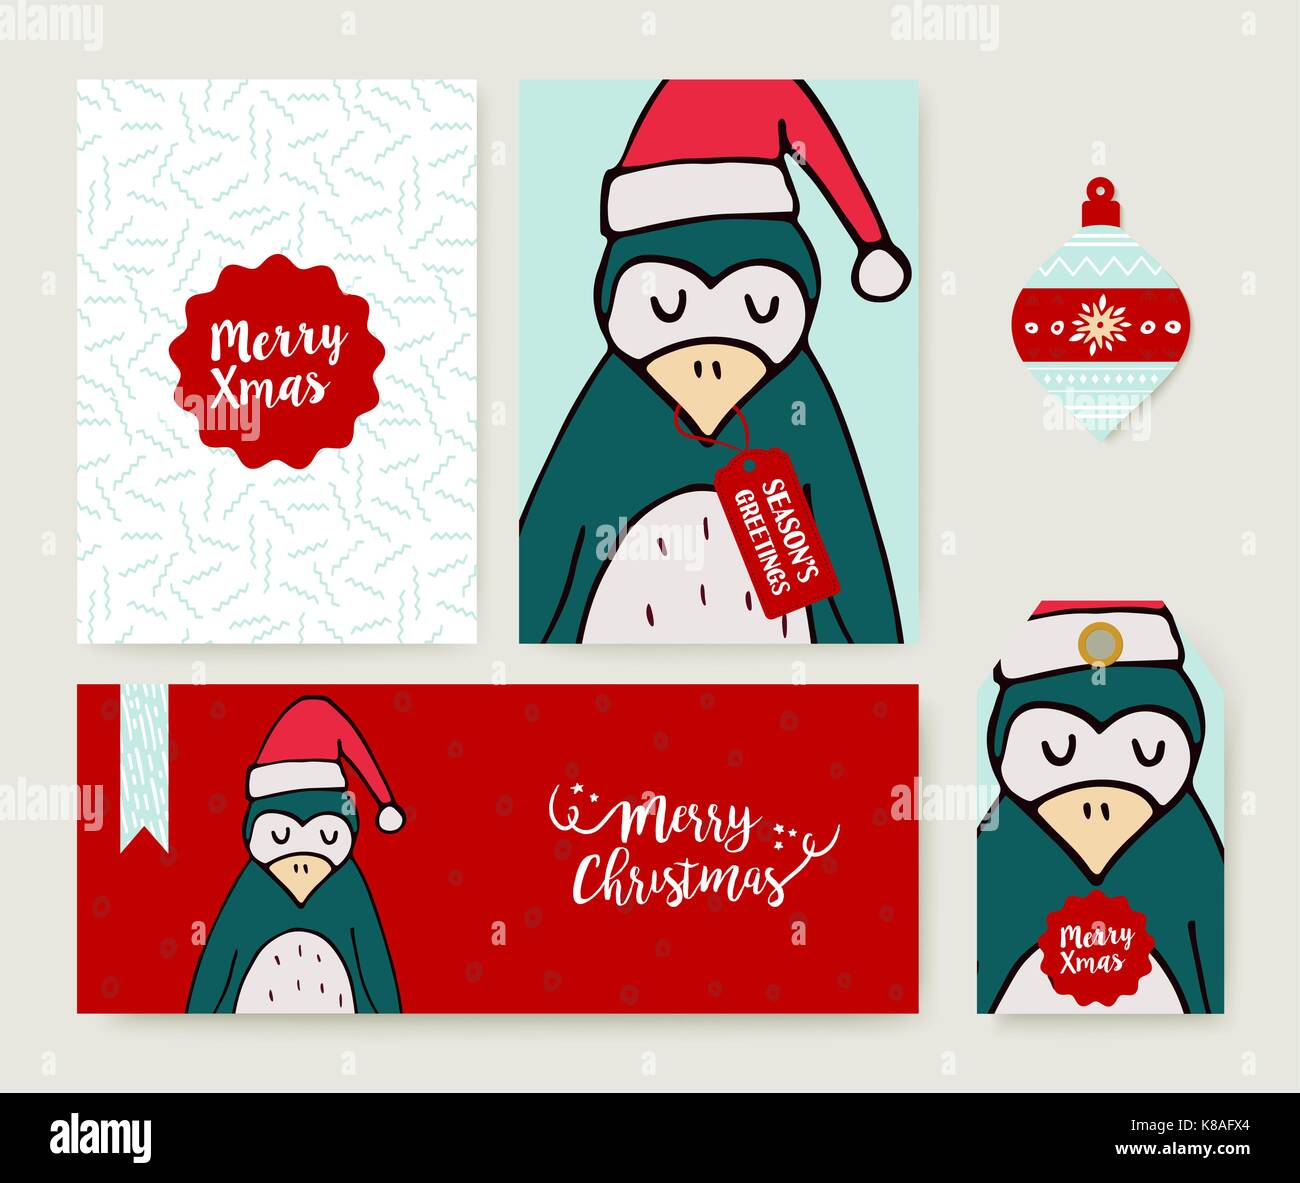 Frohe Weihnachten Grußkarten-Set mit niedlichen Pinguin in Santa hat Hand gezeichneten Karikatur. Mit holiday themed Vorlage, Tag und Label. EPS 10 Vektor. Stock Vektor